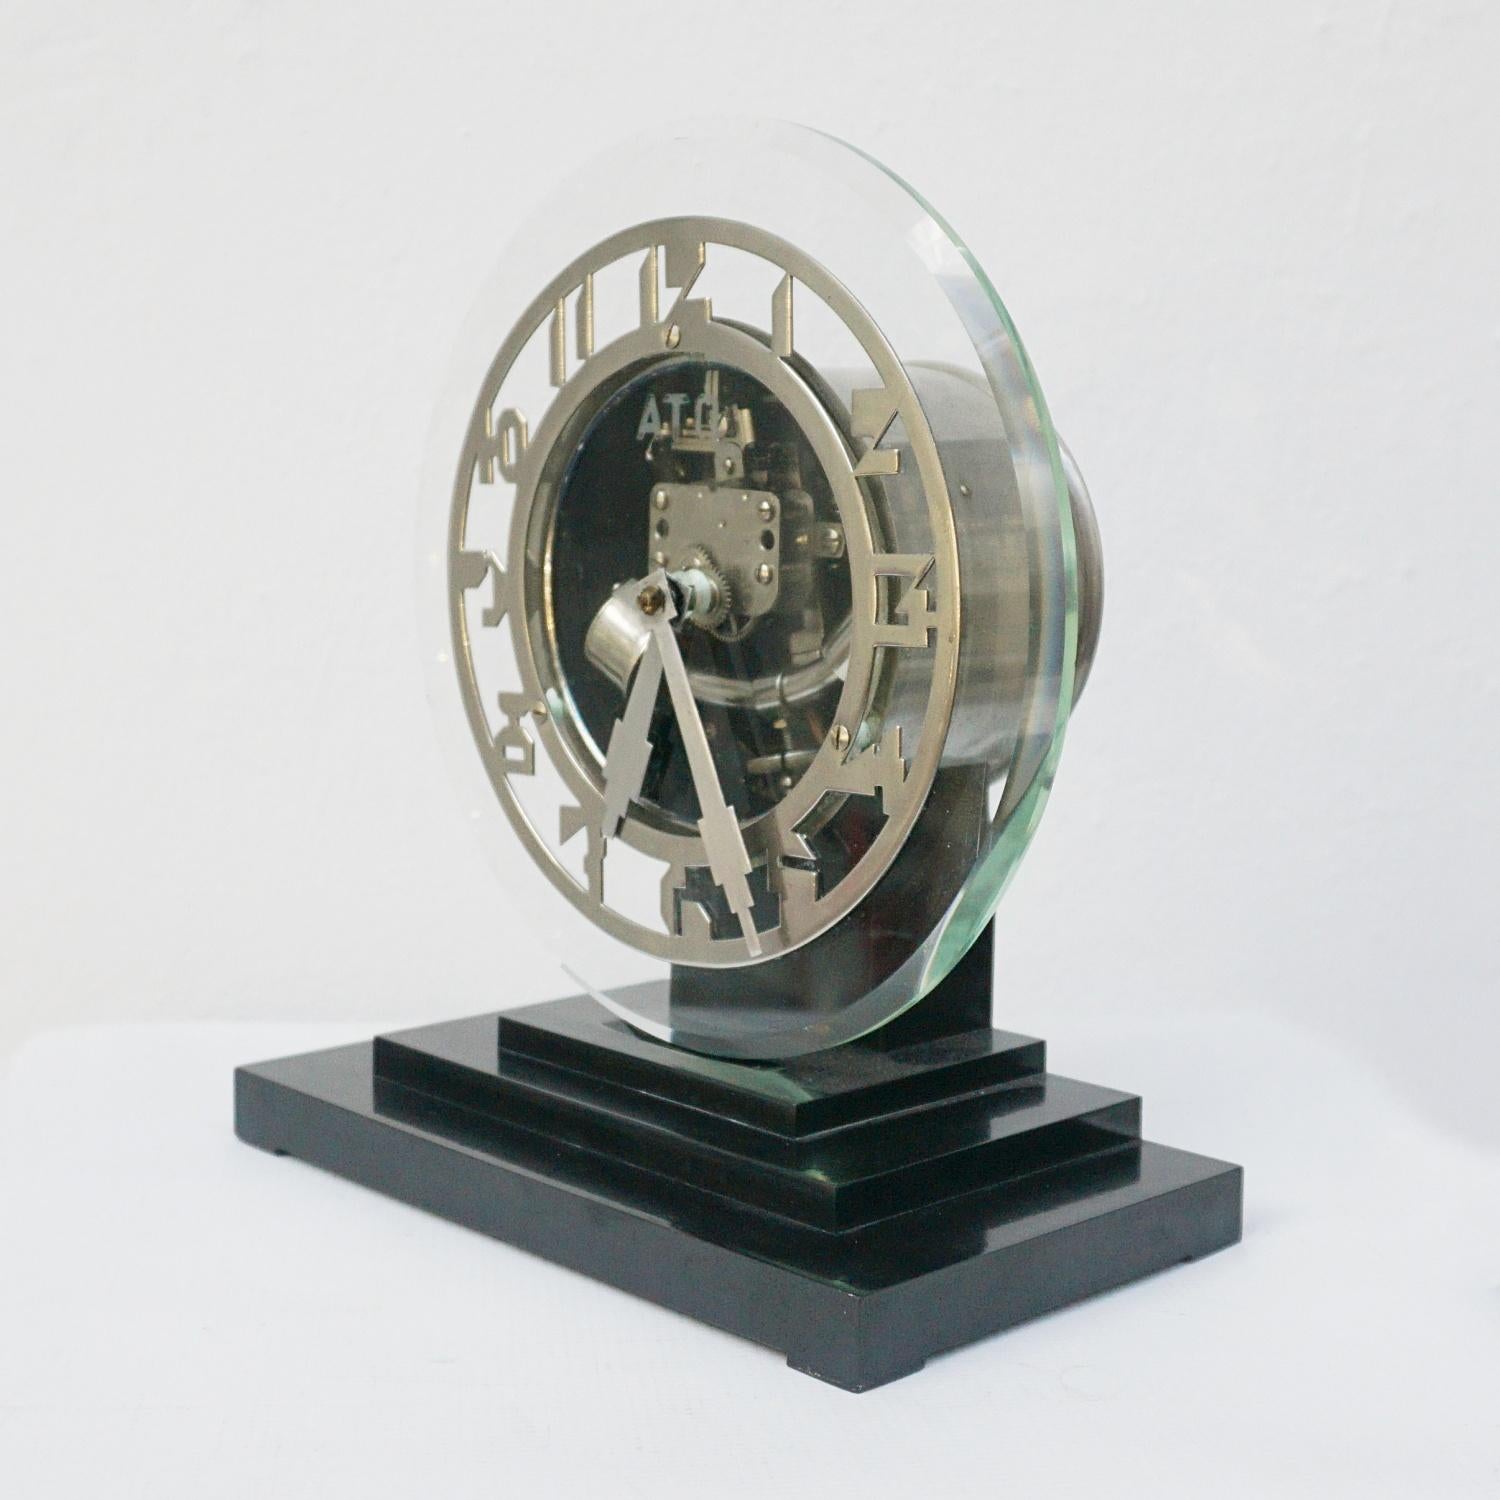 Vintage 1930''s Ato Art Deco Mantel Clock Designed by Léon Hatot Circa 1930 Paris 3